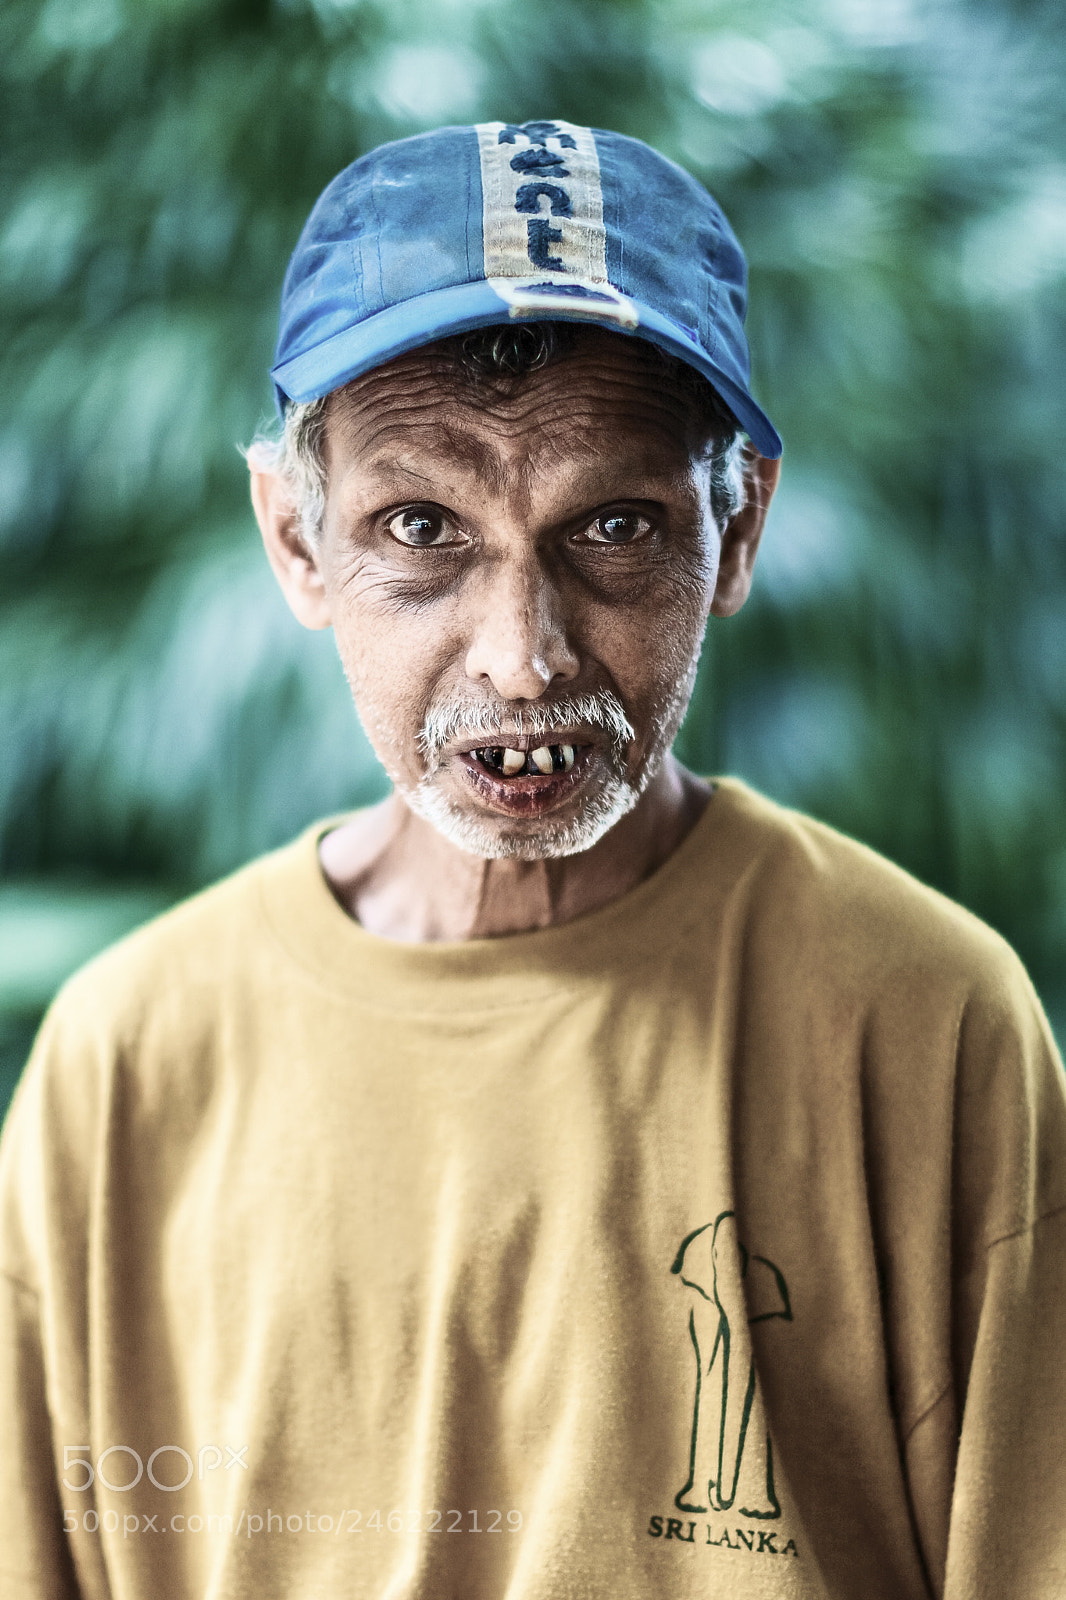 Canon EOS 40D sample photo. The beggar lankan man photography